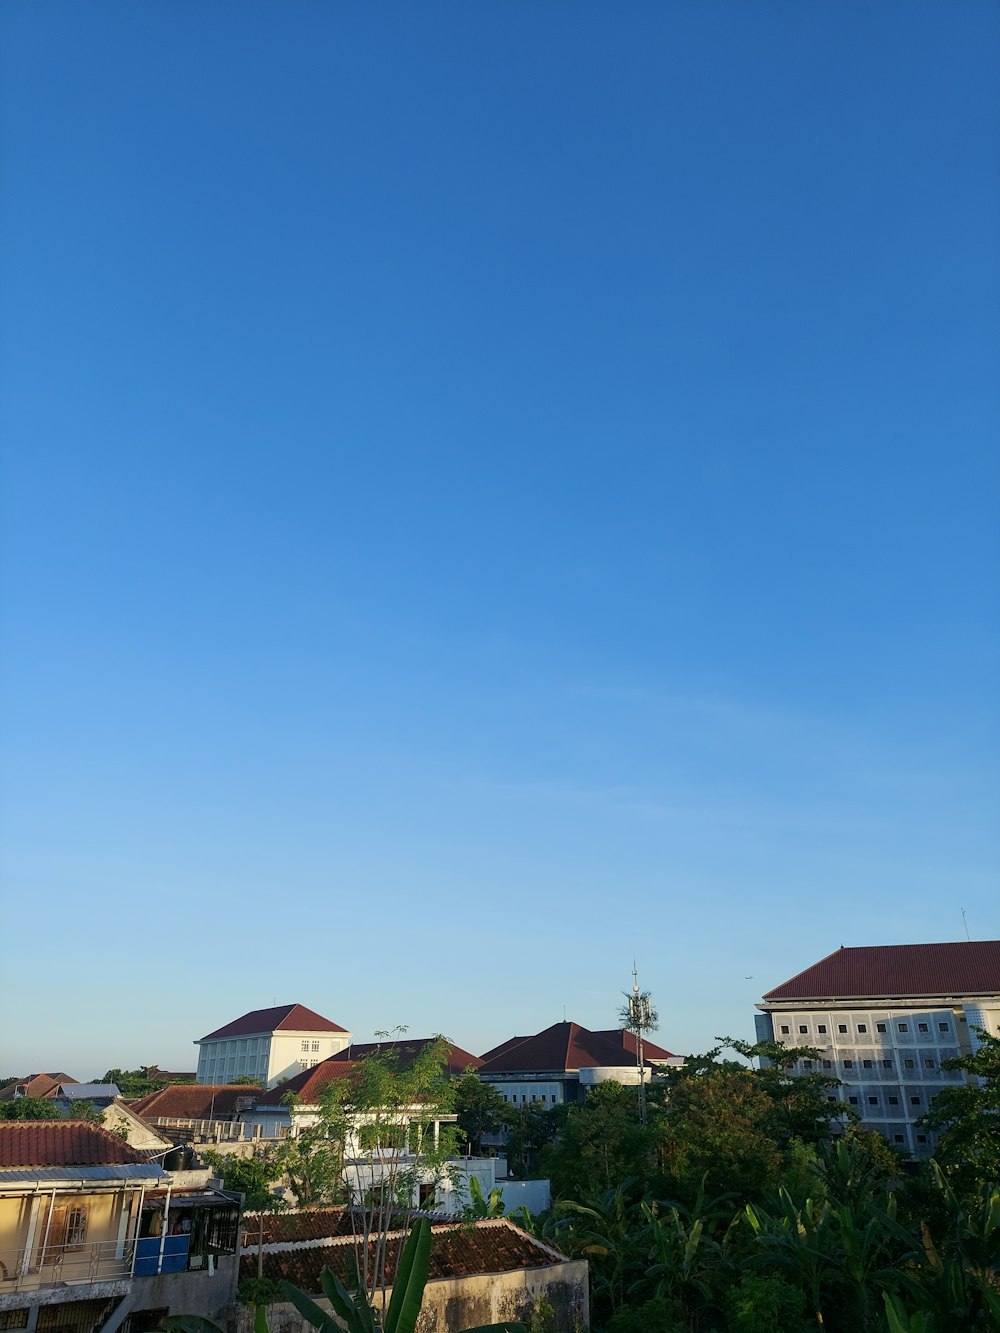 Ein klarer blauer Himmel mit ein paar Gebäuden im Hintergrund